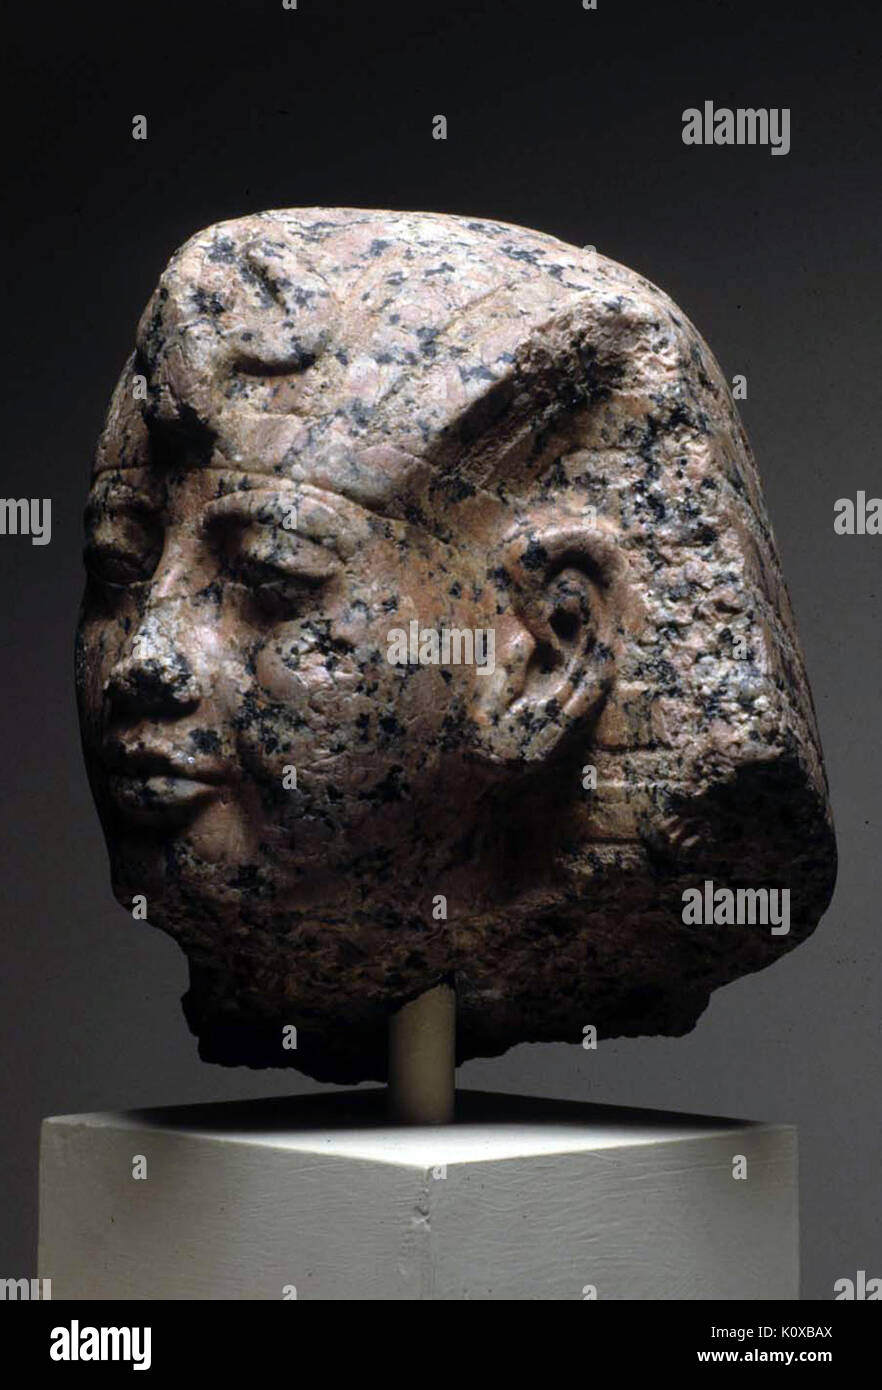 Amenhotep III with nemes headdress MET 23.3.170 02 Stock Photo